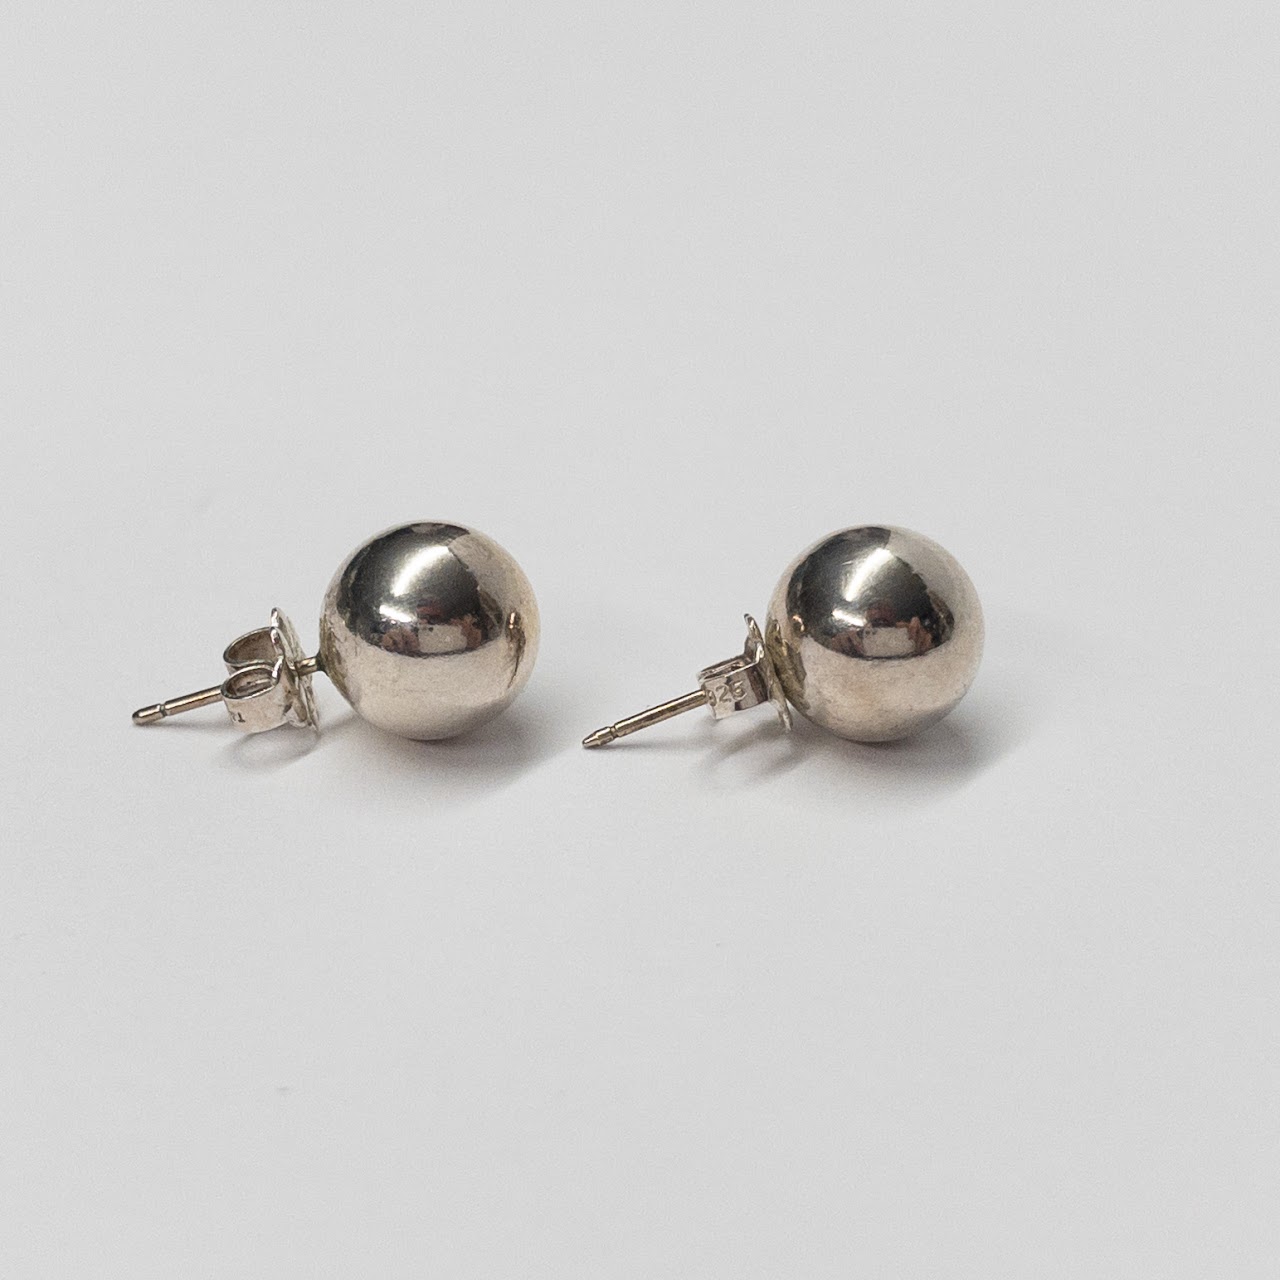 Tiffany & Co. Sterling Silver Ball Stud Earrings